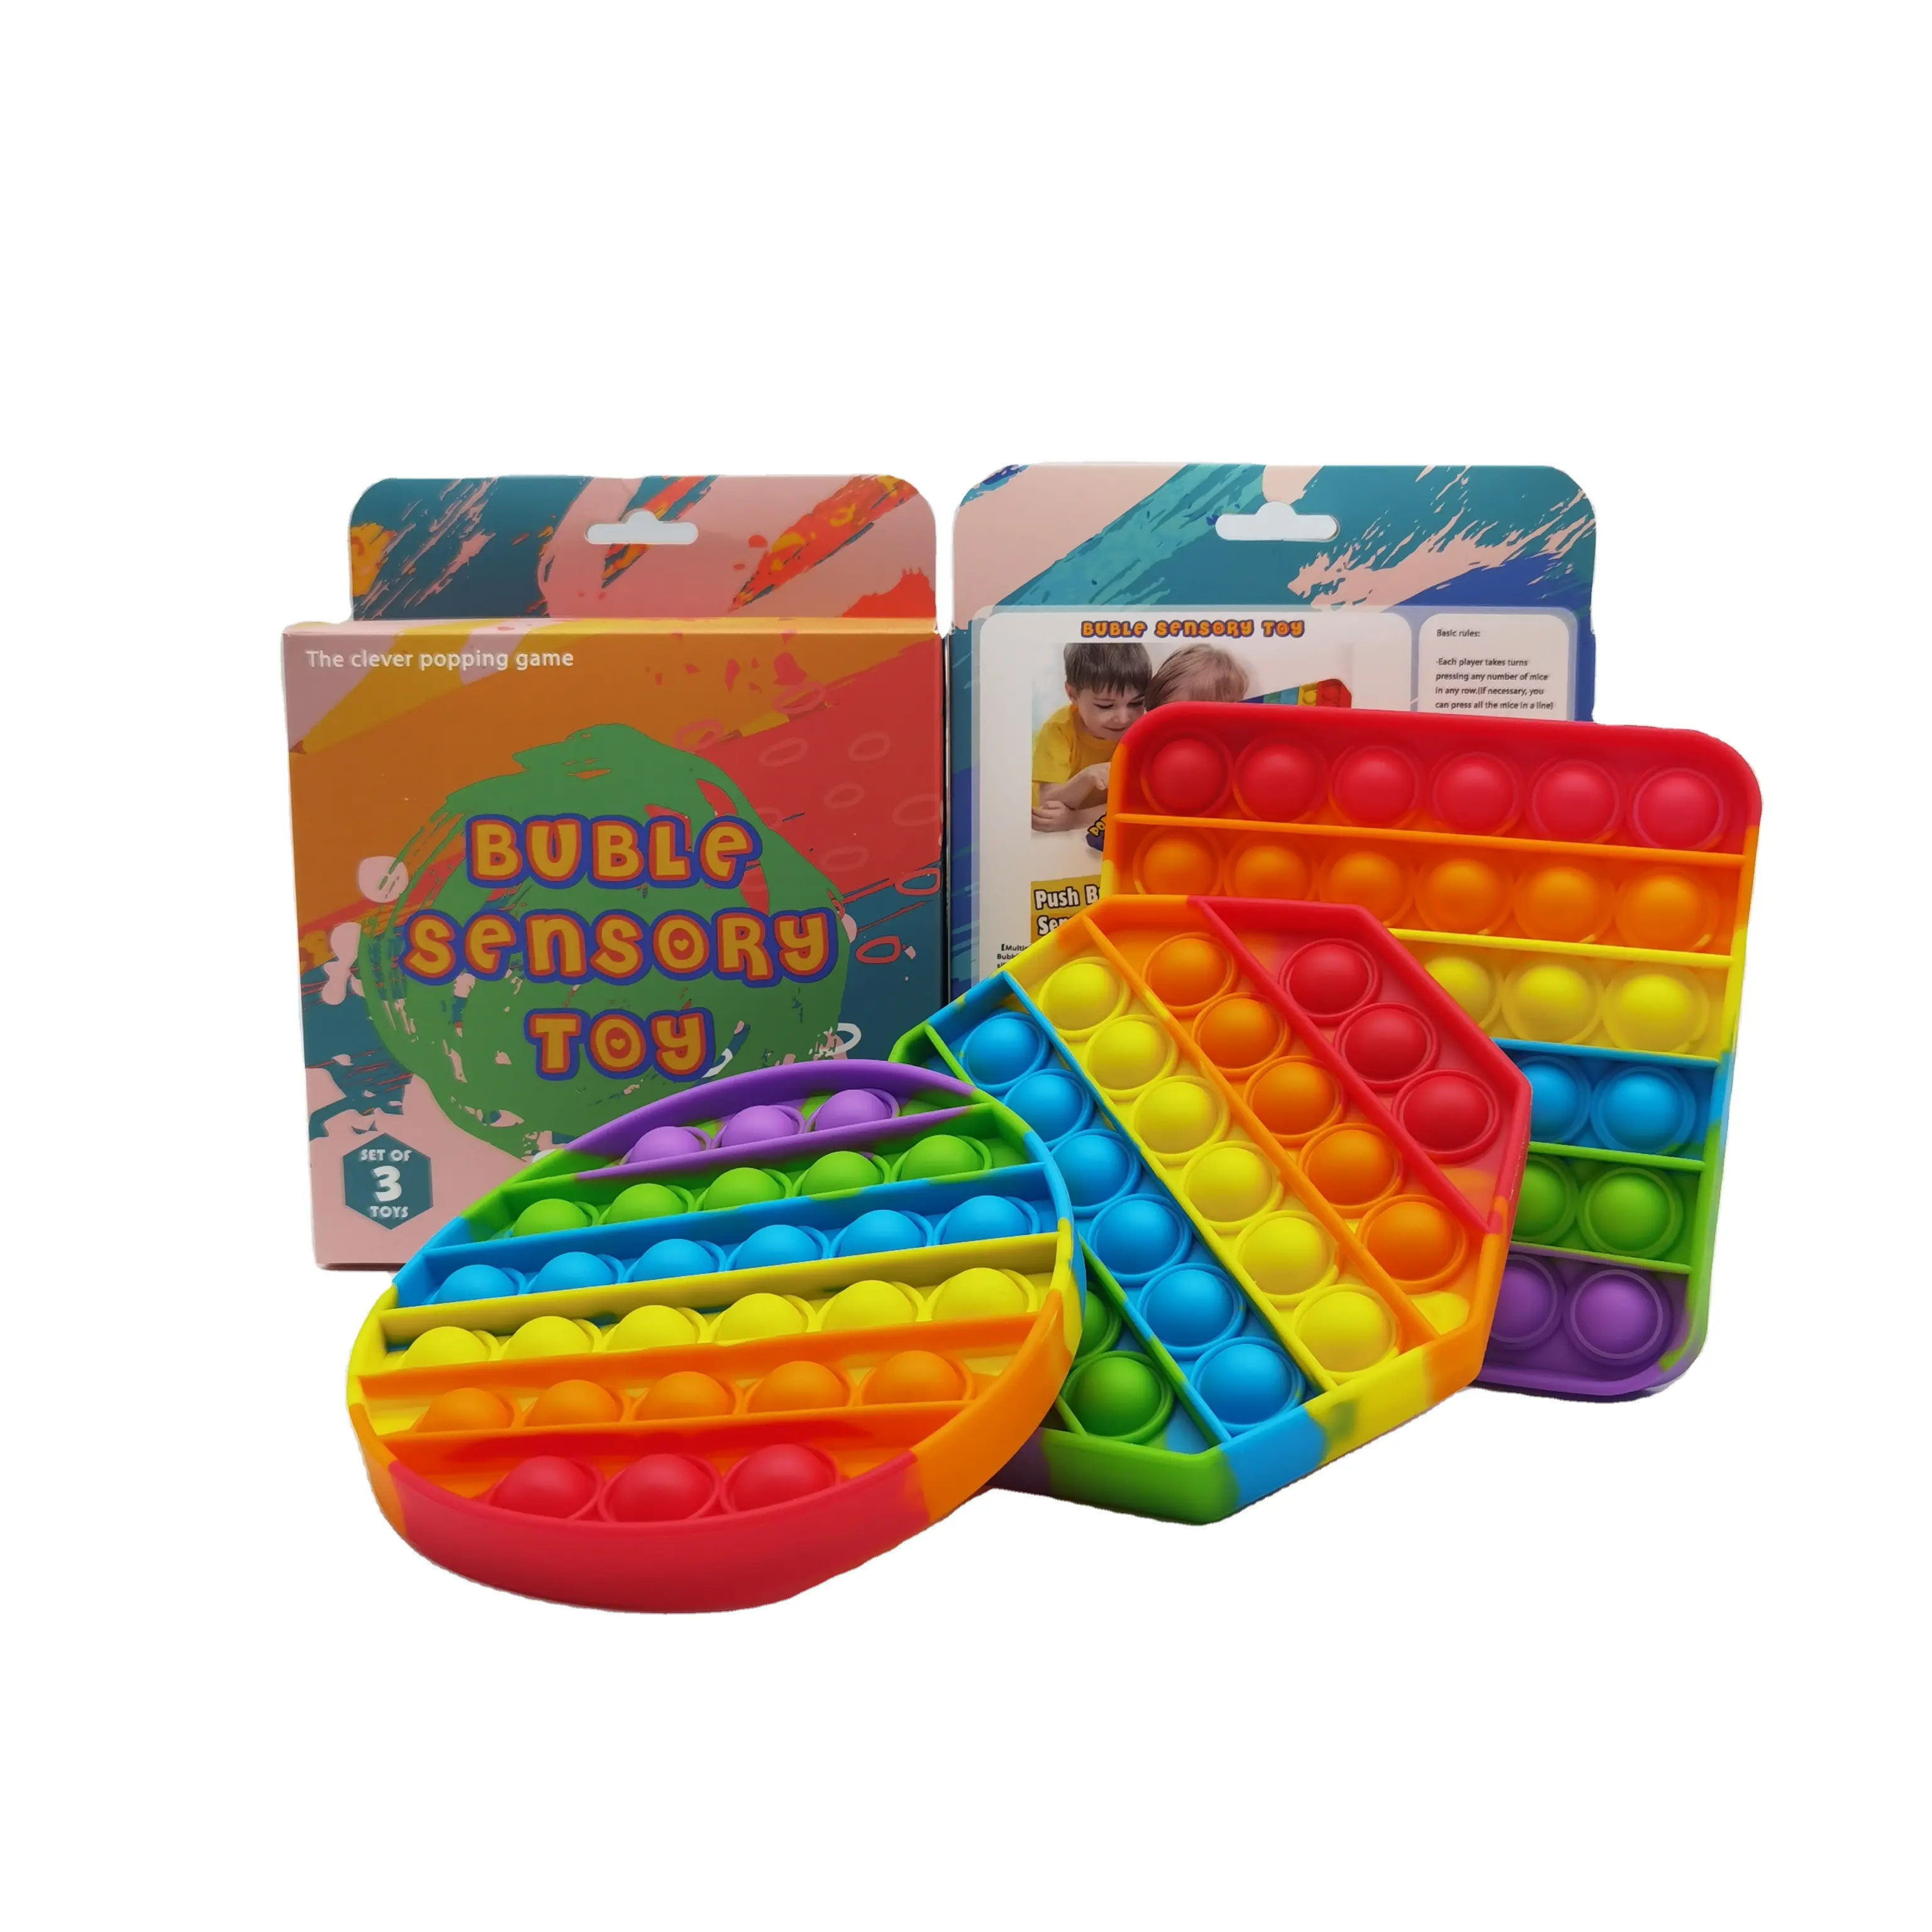 Silicone simple dimple push ASMR rainbow pop it fidget toy set stress pack push pop bubble squeeze sensory fidget toys